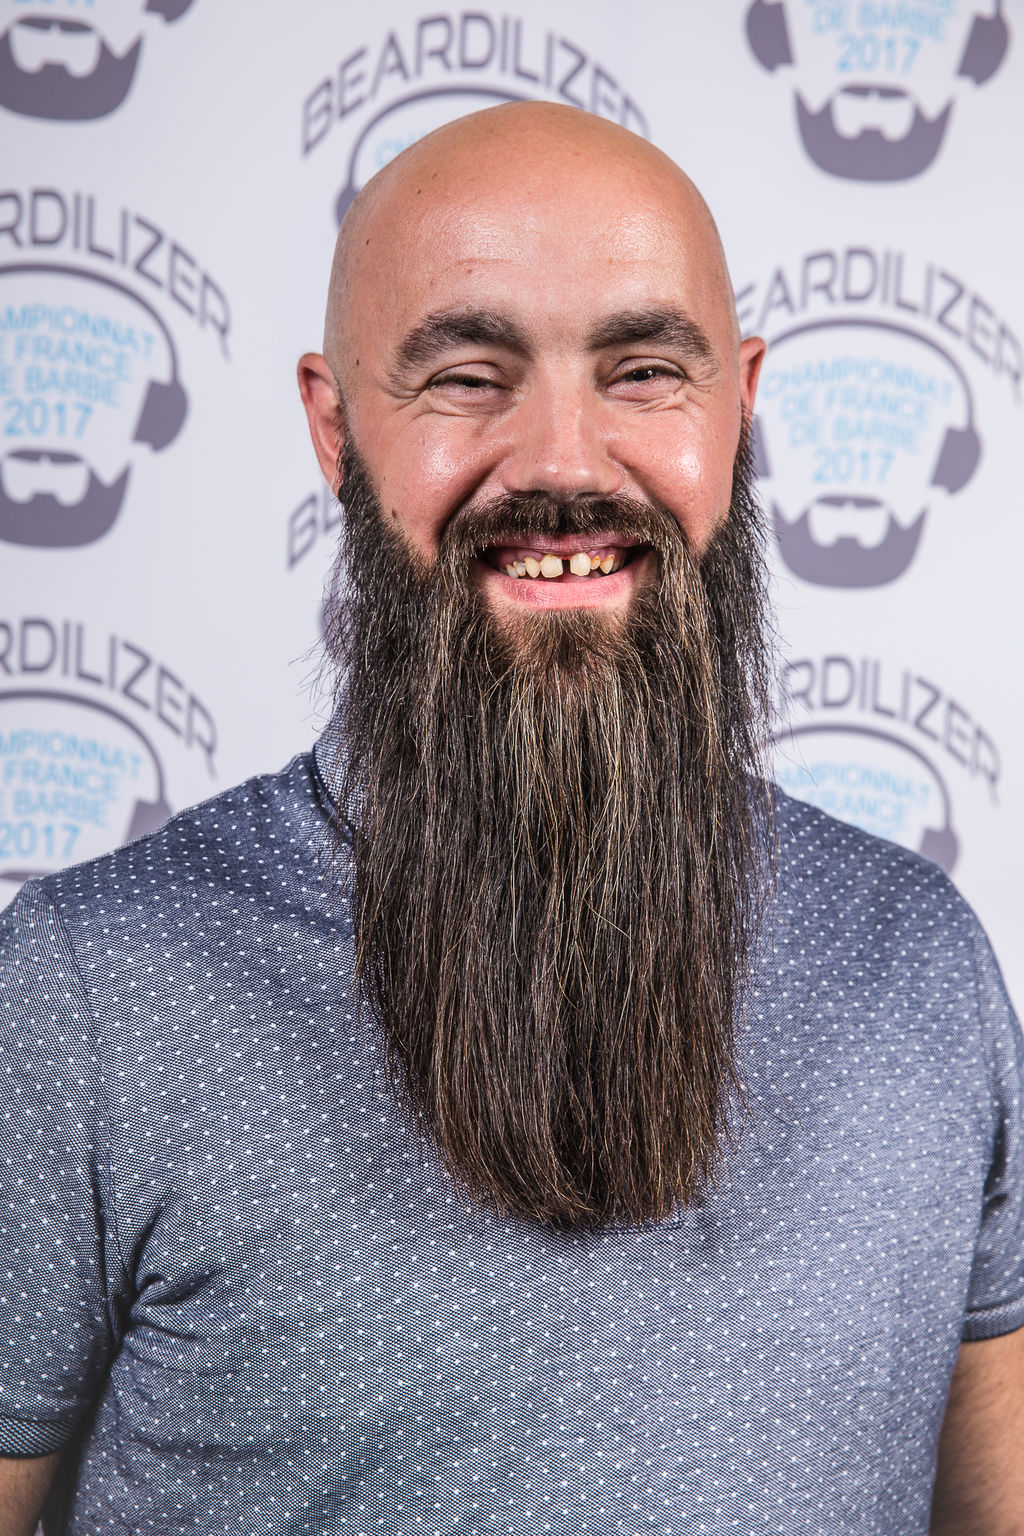 Julien-Voeltzel-gagnant-de-la-categorie-barbe-naturelle-superieure-a-20cm_width1024.jpg